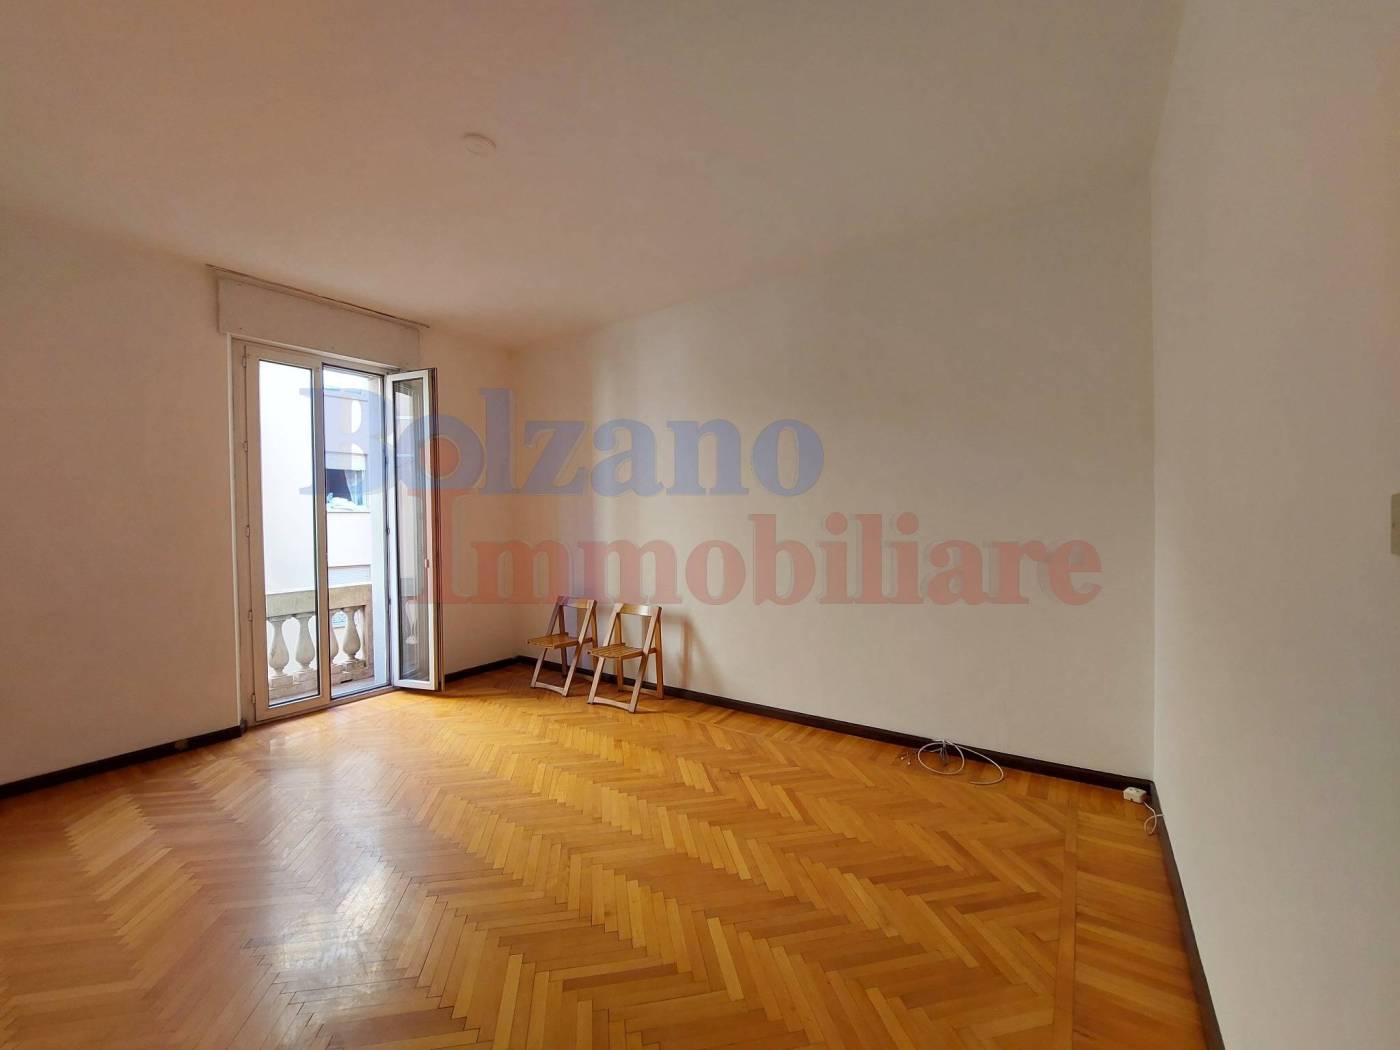 Appartamento a Bolzano in una zona molto ricercata, esattamente in Piazza Vittoria. Il condominio e le parti comuni dove è situato l'appartamento 